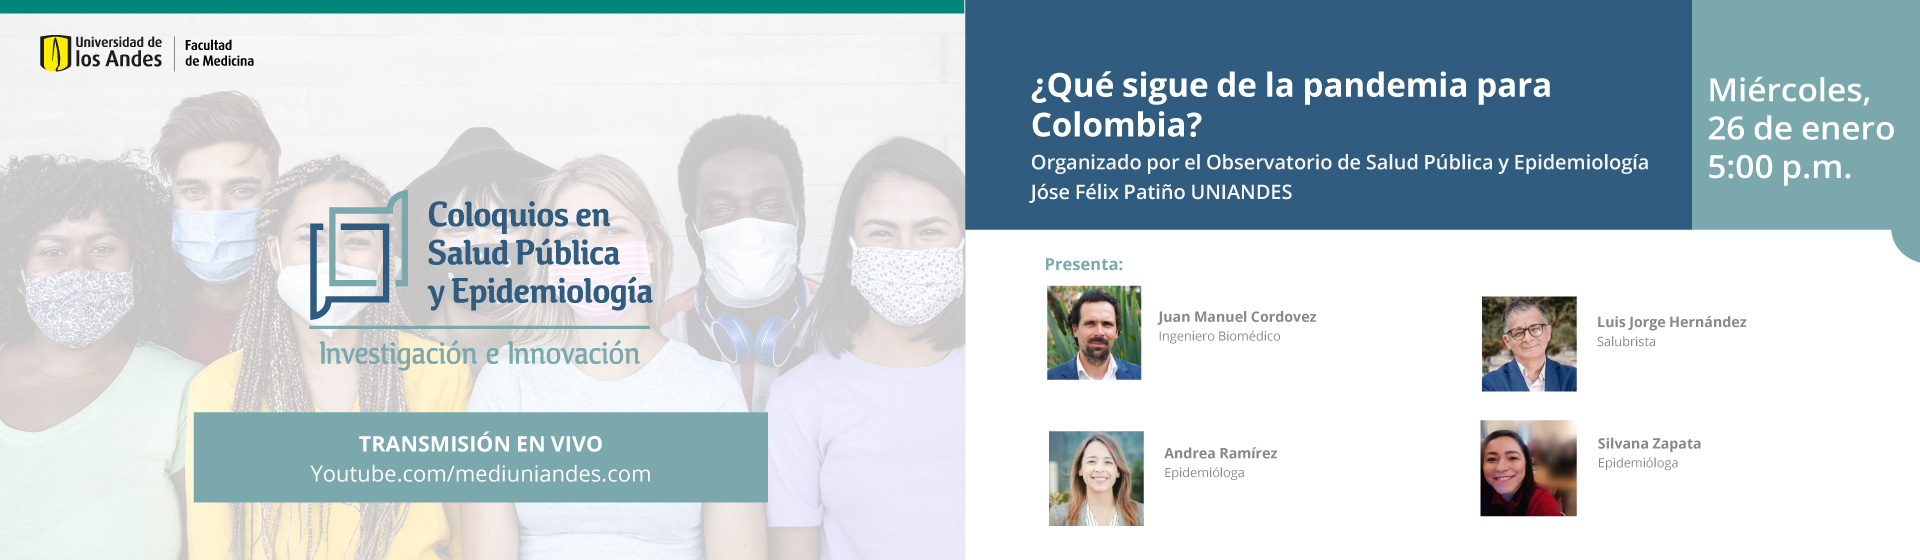 ¿Qué sigue de la pandemia para Colombia?